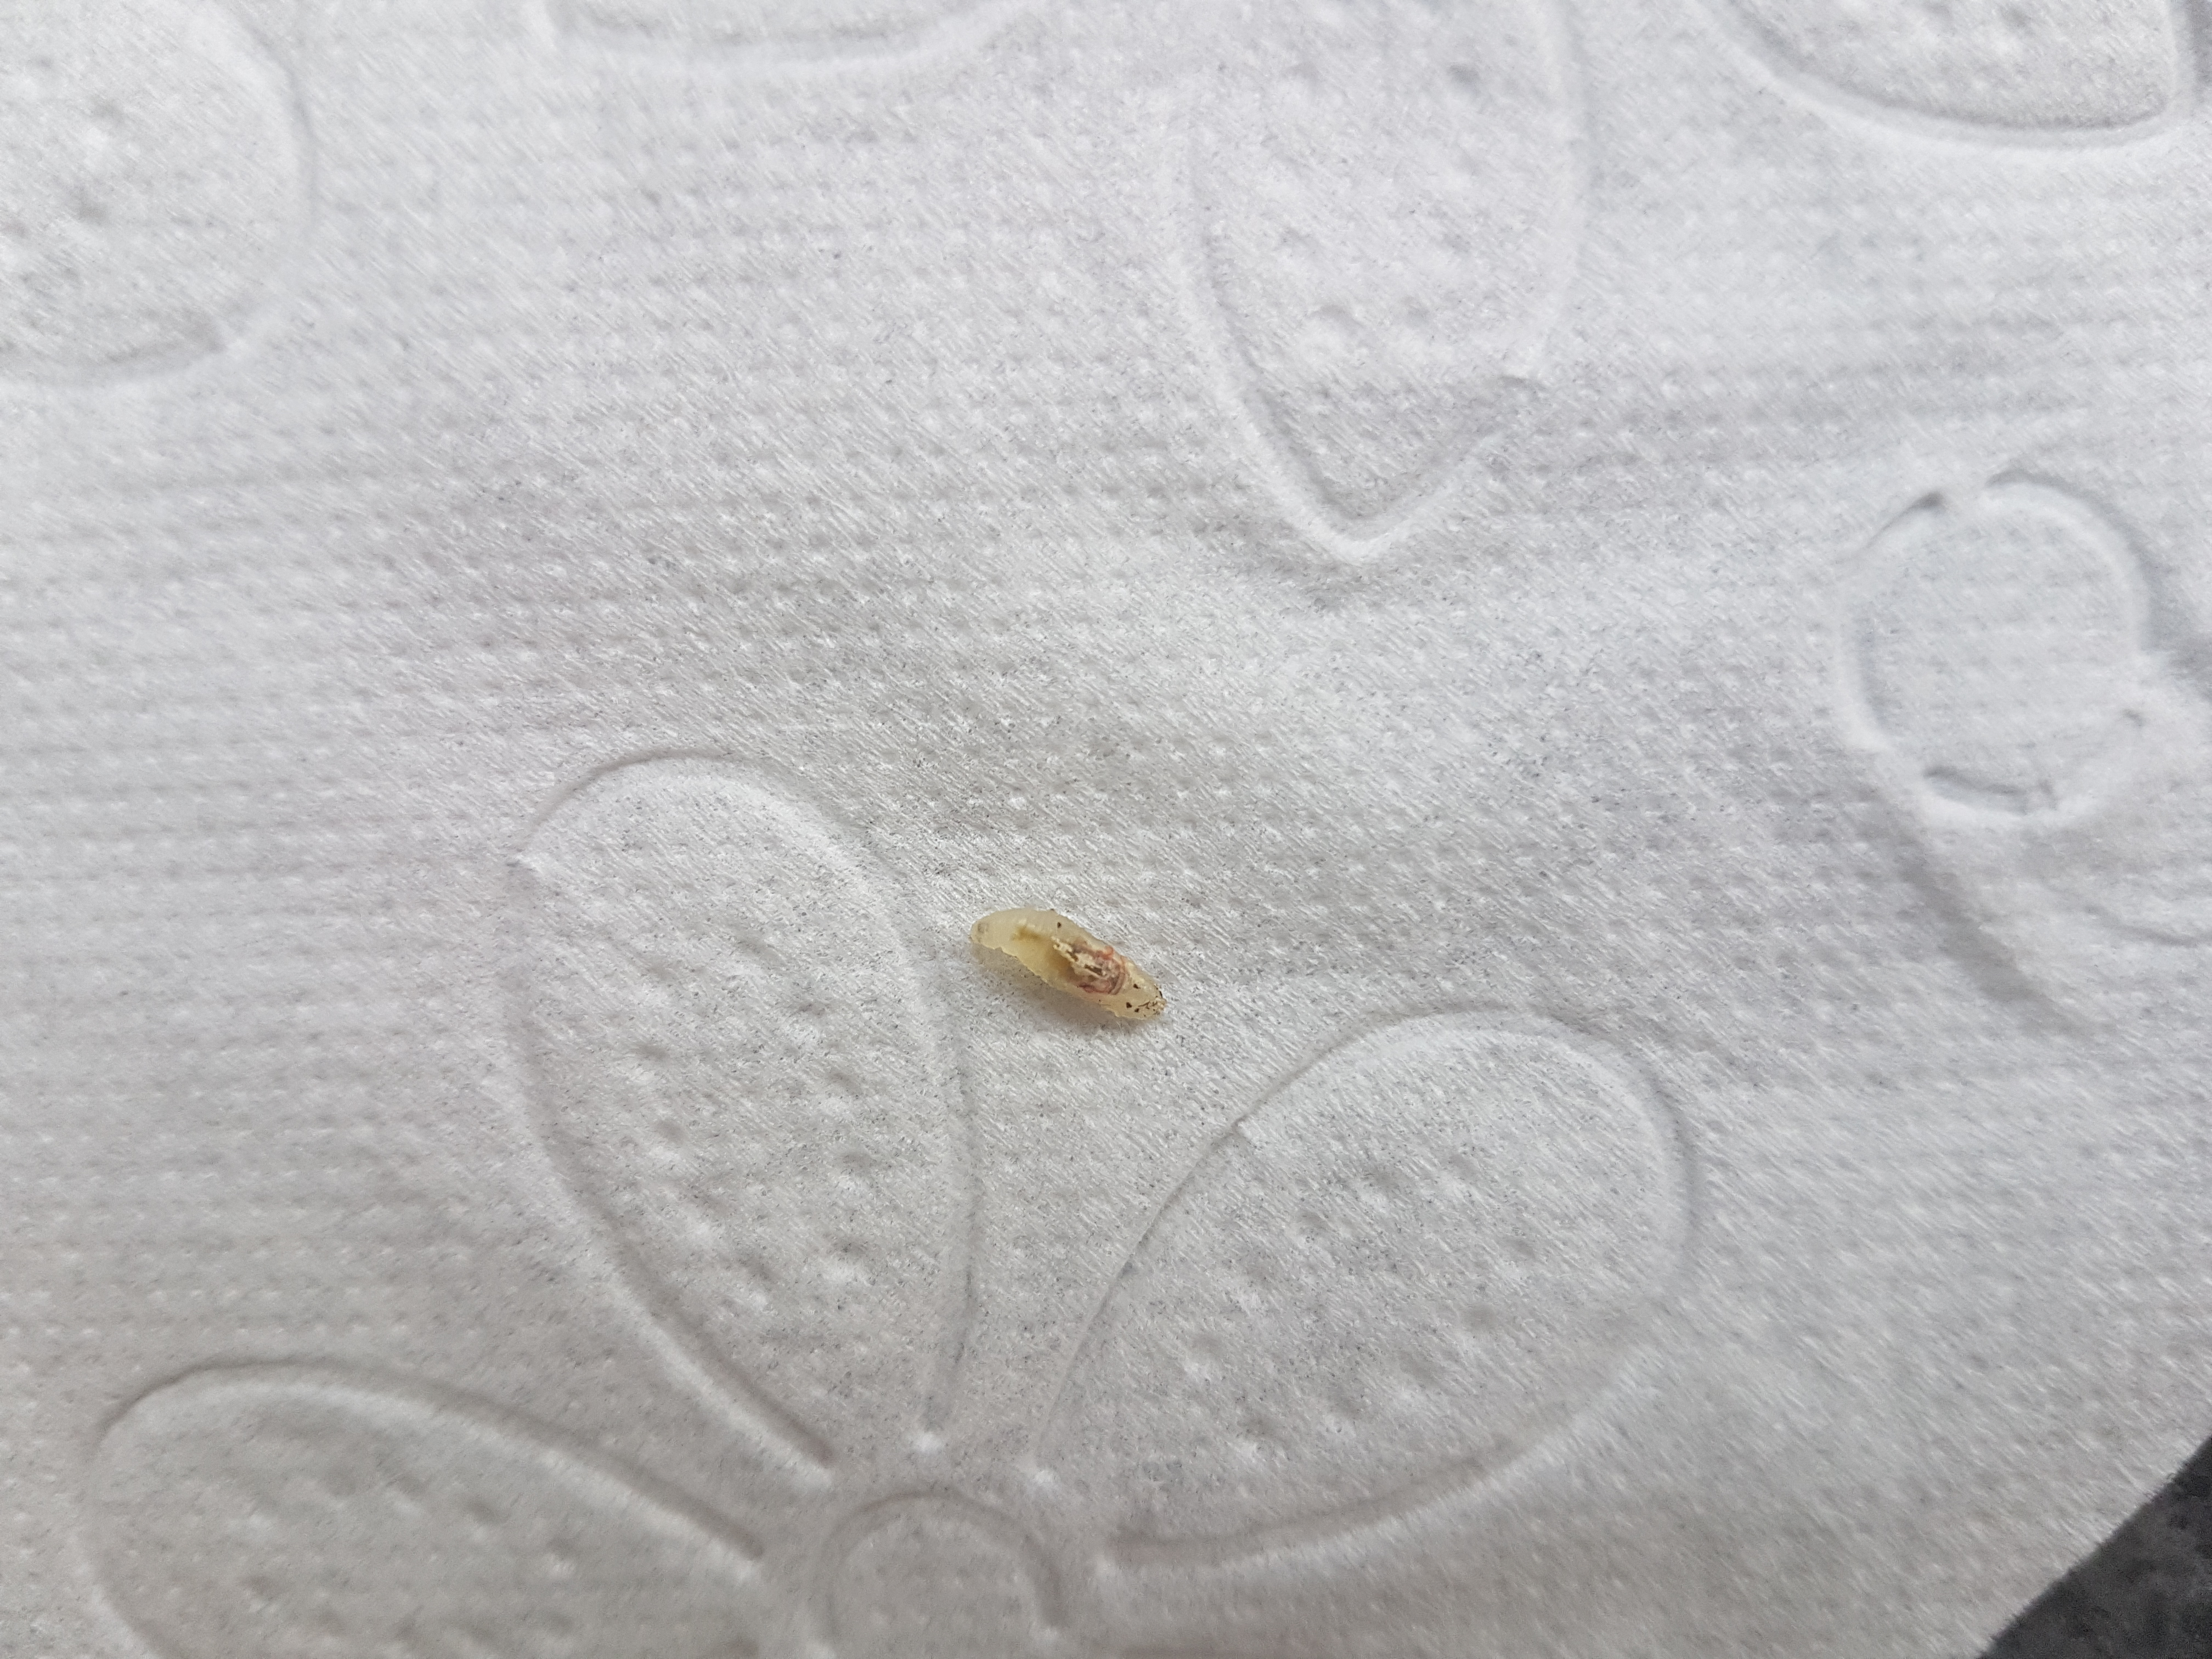 Was ist das für ein kleiner Wurm im Bad? (Insekten, Würmer ...